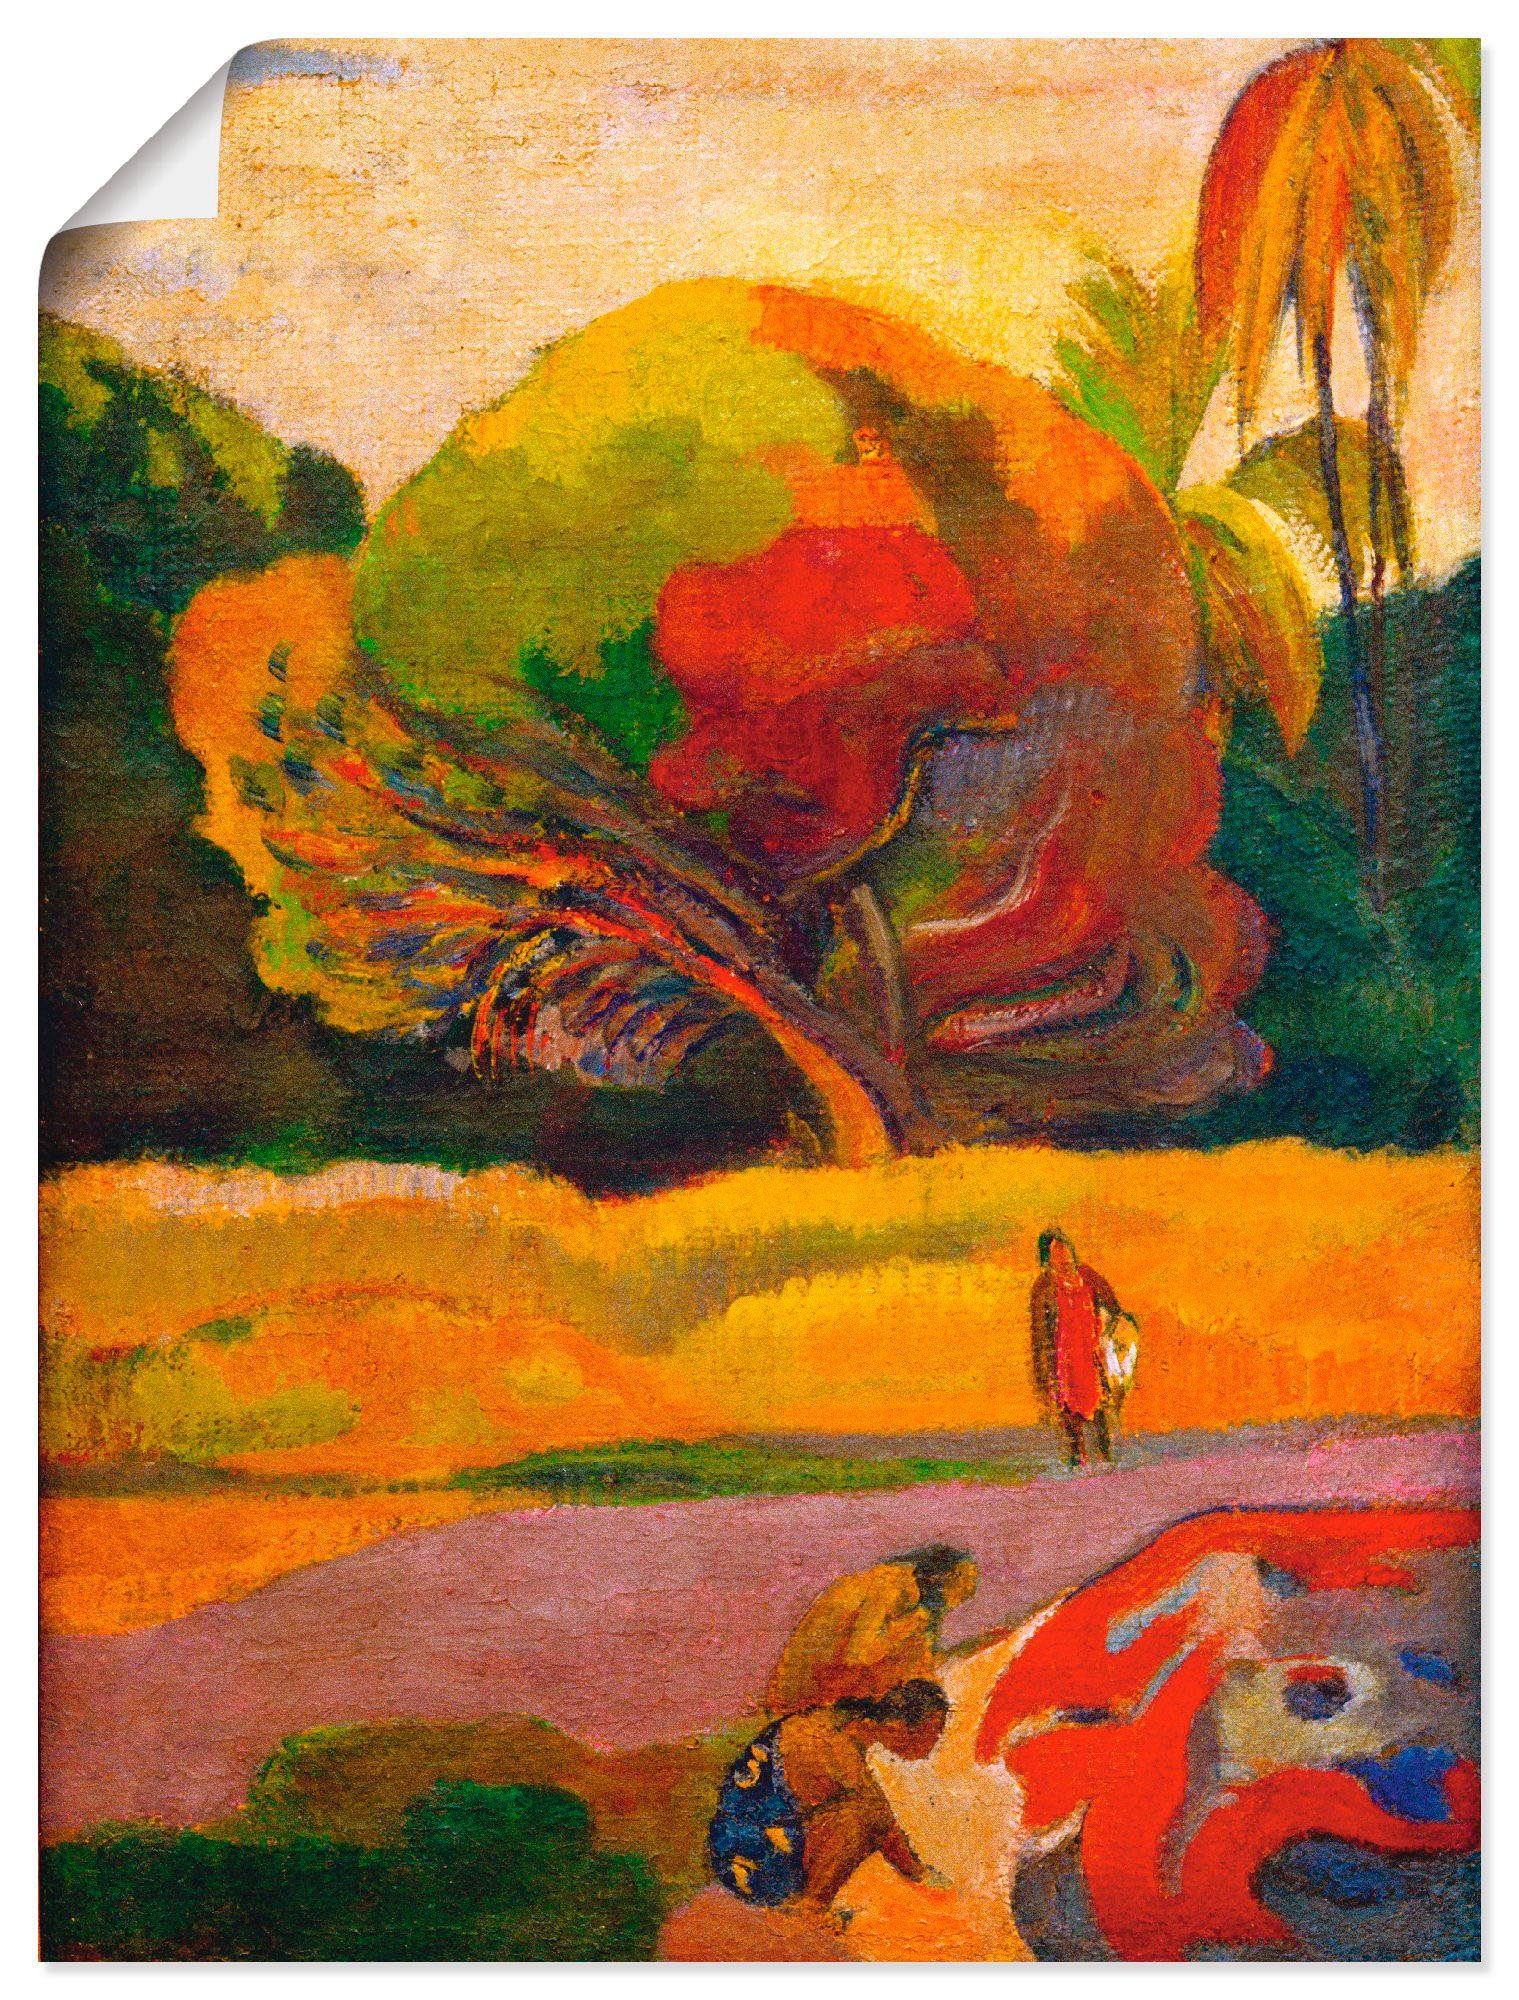 Artland Artprint Paul Gauguin vrouwen aan de rivier in vele afmetingen & productsoorten -artprint op linnen, poster, muursticker / wandfolie ook geschikt voor de badkamer (1 stuk)